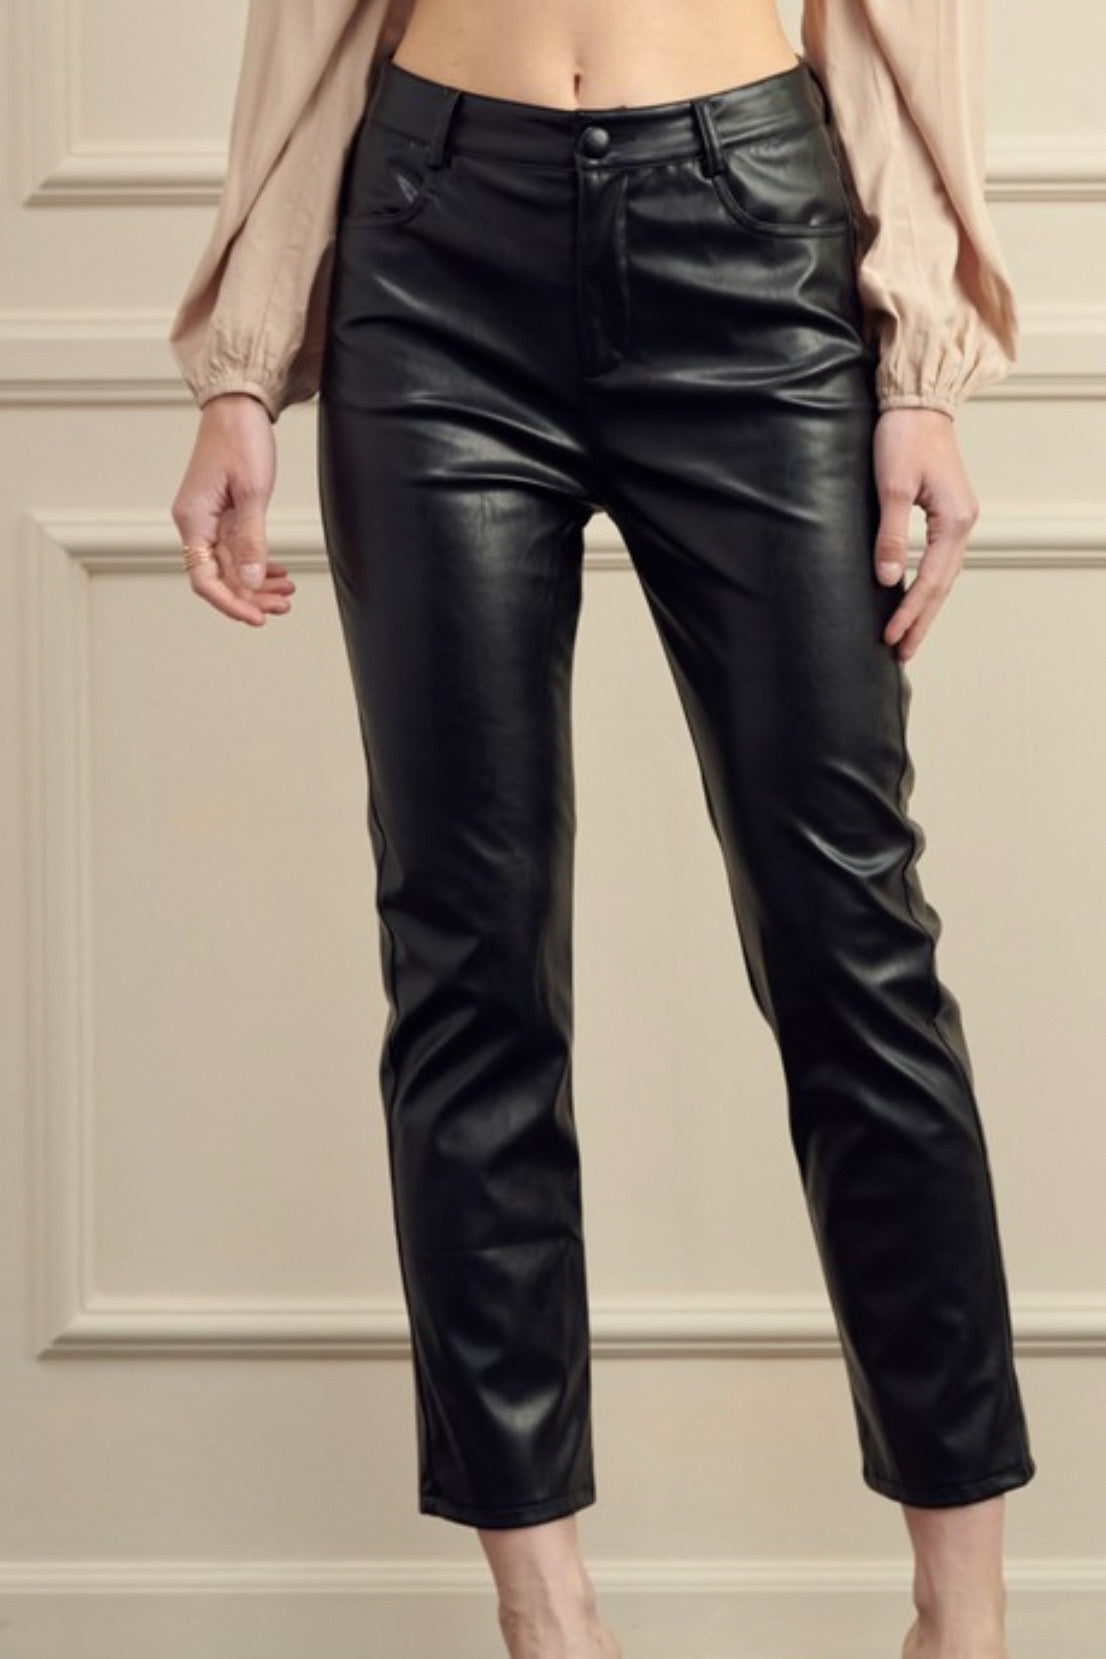 CITY CHIC | Women's Plus Size Norah Faux Leather Pant - black - 20W